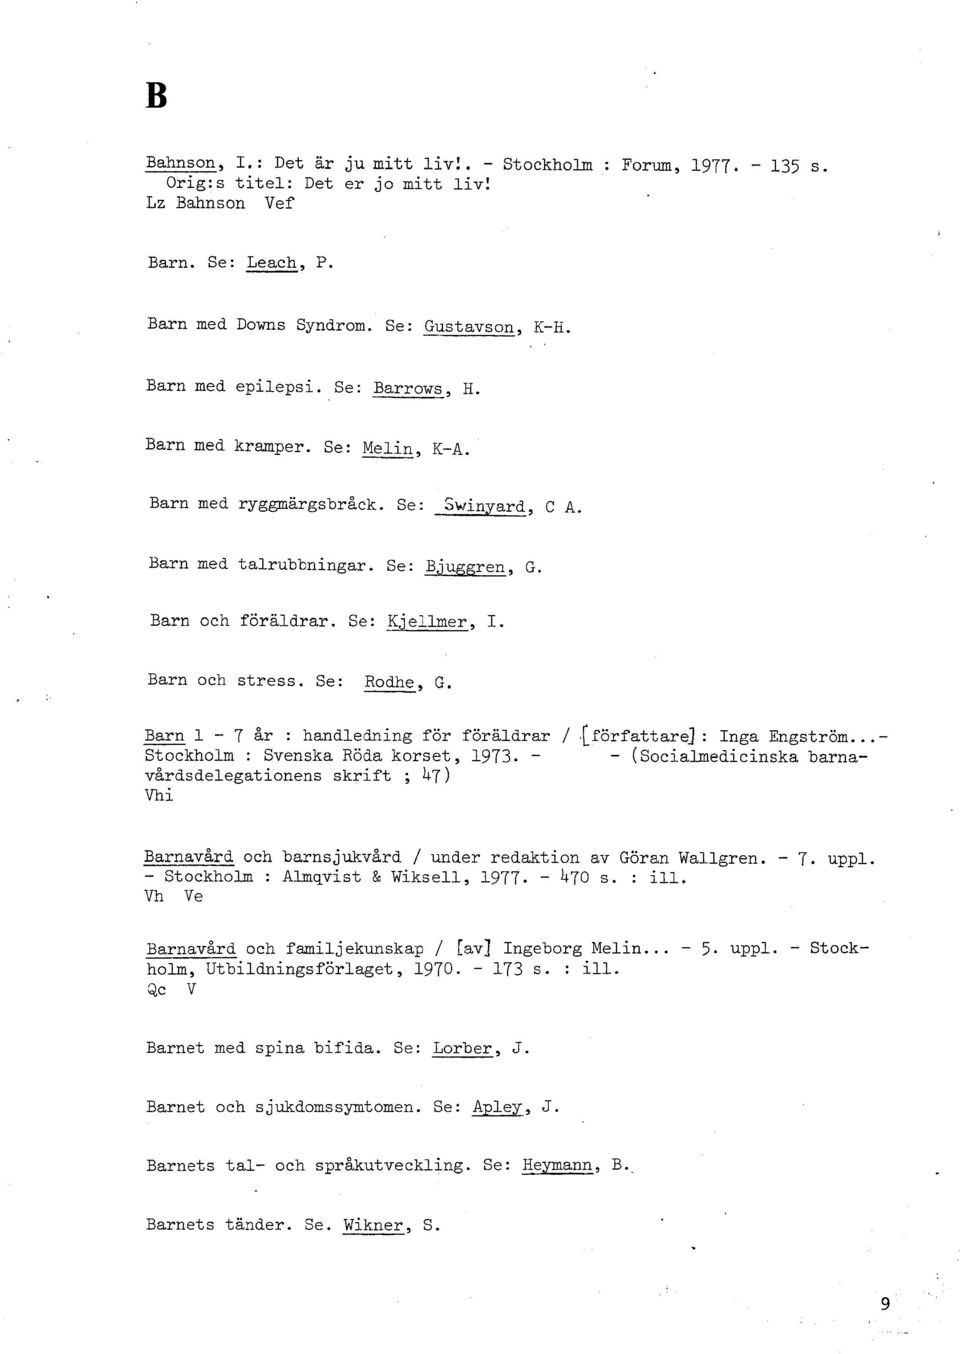 Barn och stress. Se: Rodhe, G. I. Barn 1-7 &r : handledning för föräldrar / #[författar4 : Inga Engström... - Stockholm : Svenska Röda korset, 1973.